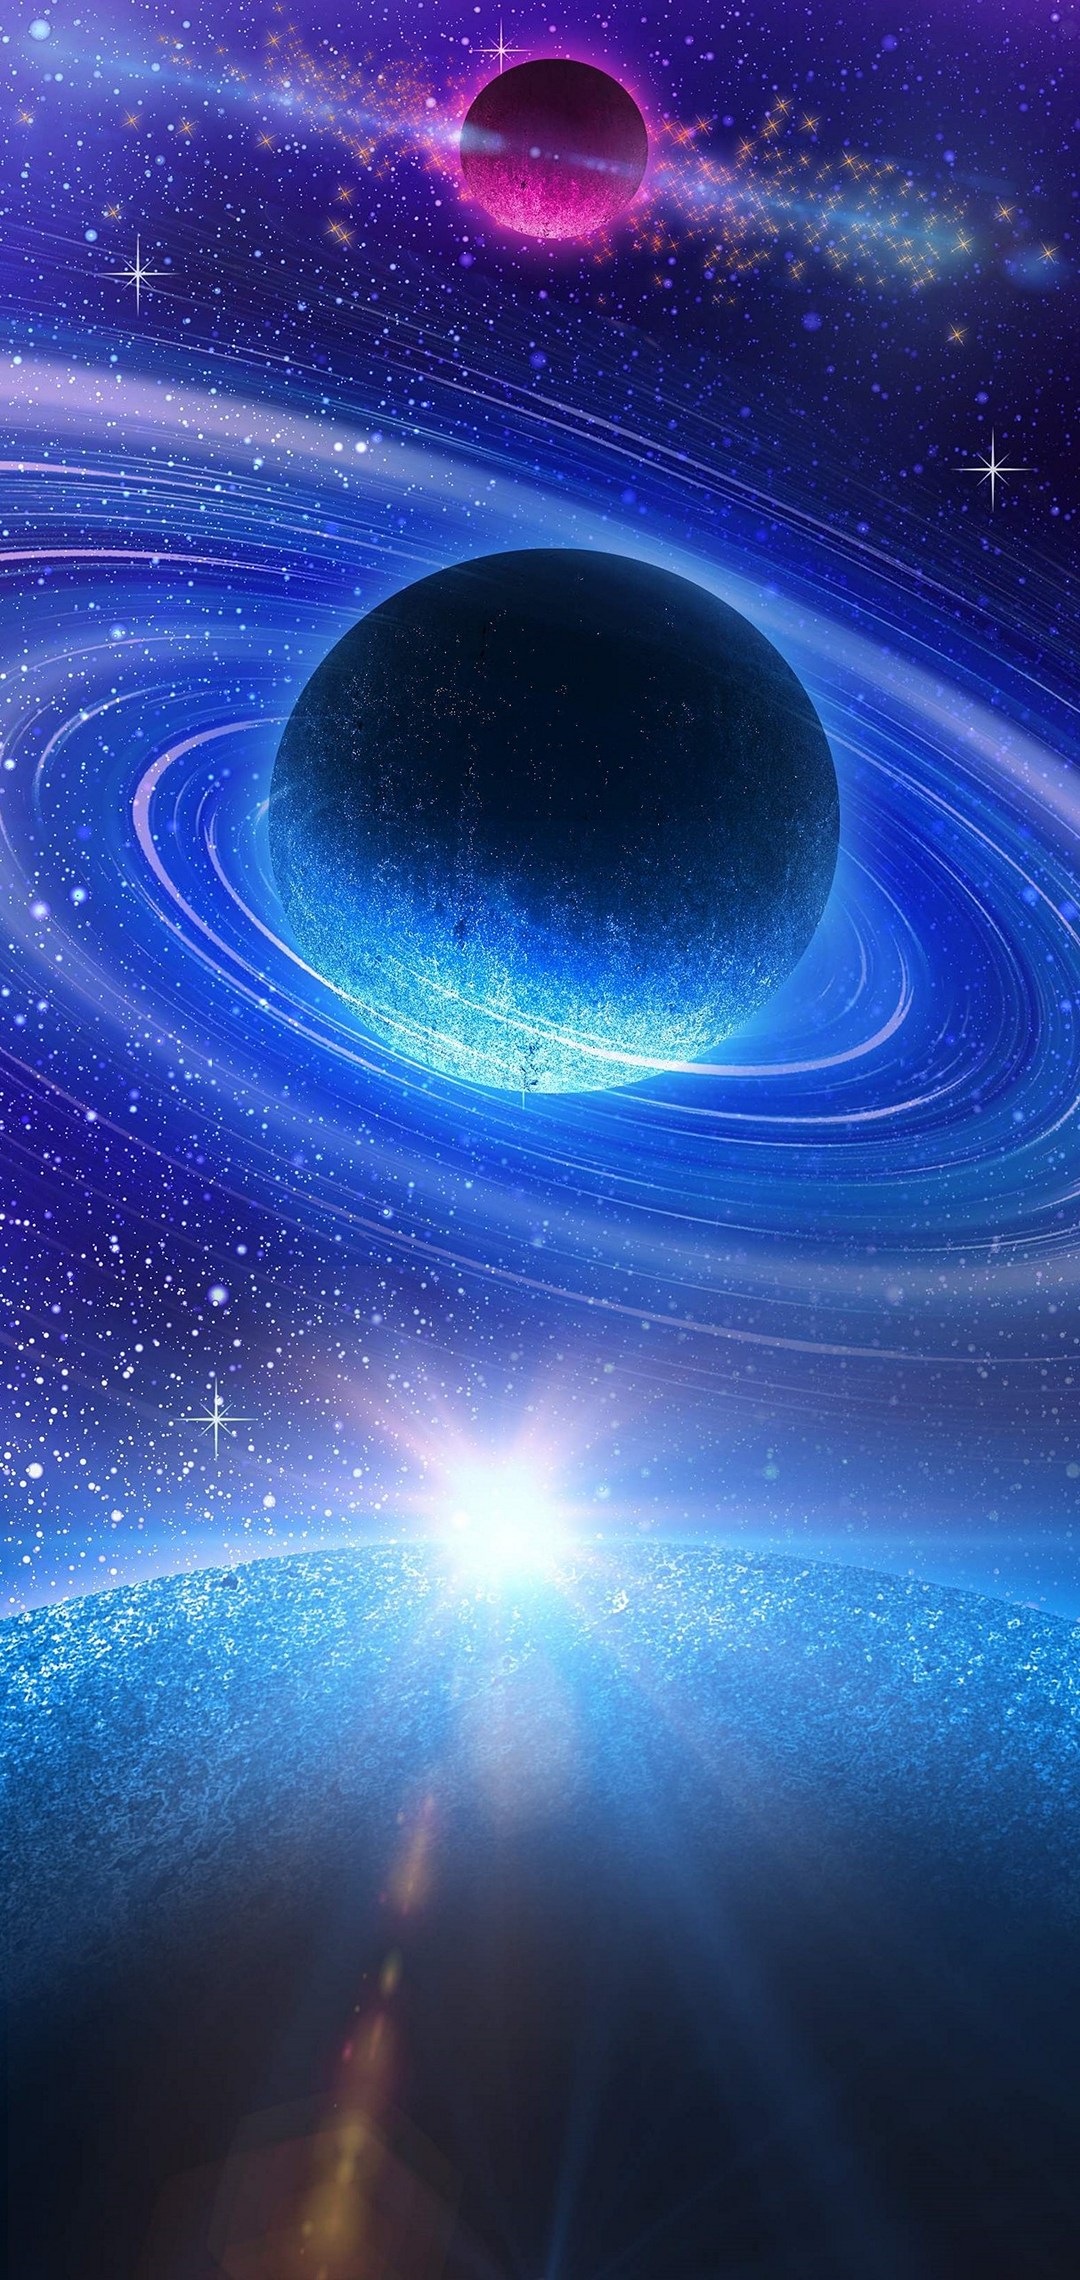 青い惑星と紫の惑星 綺麗な宇宙 Aquos Sense4 壁紙 待ち受け Sumaran